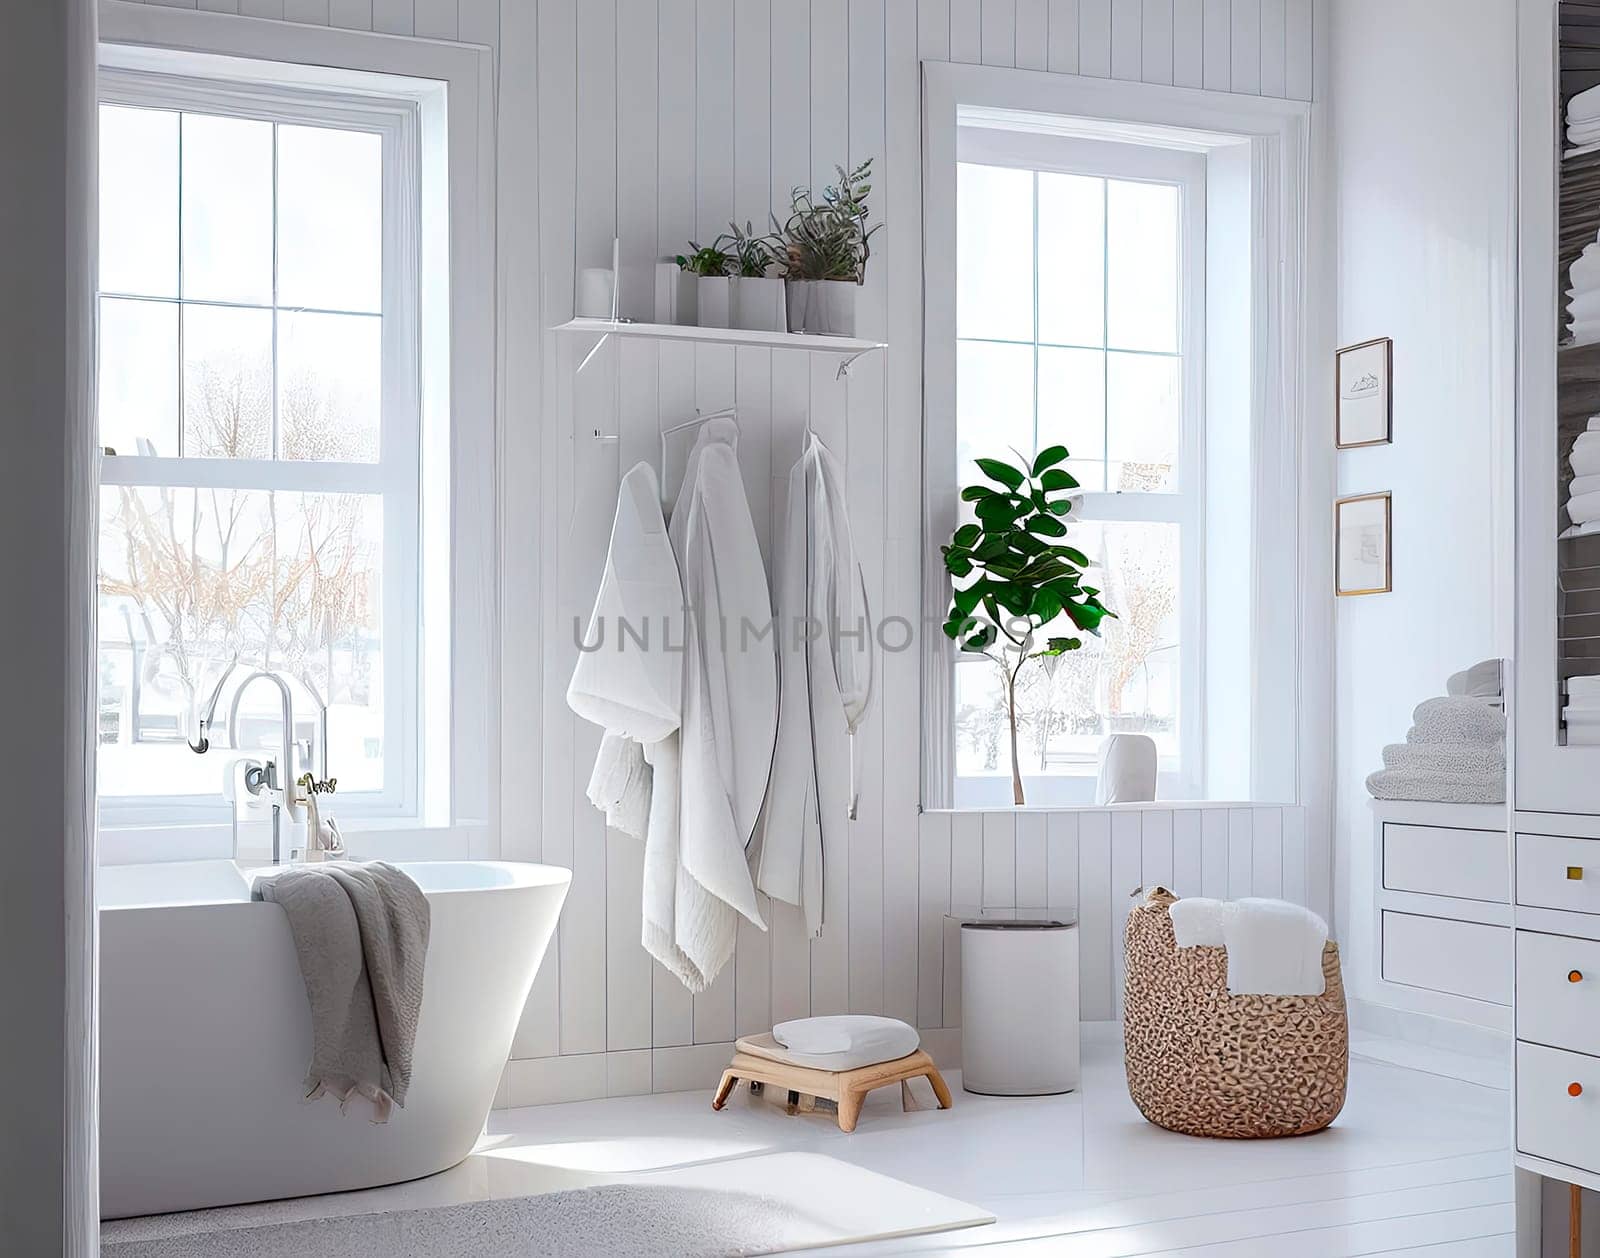 Bathroom in Scandinavian style. by yanadjana